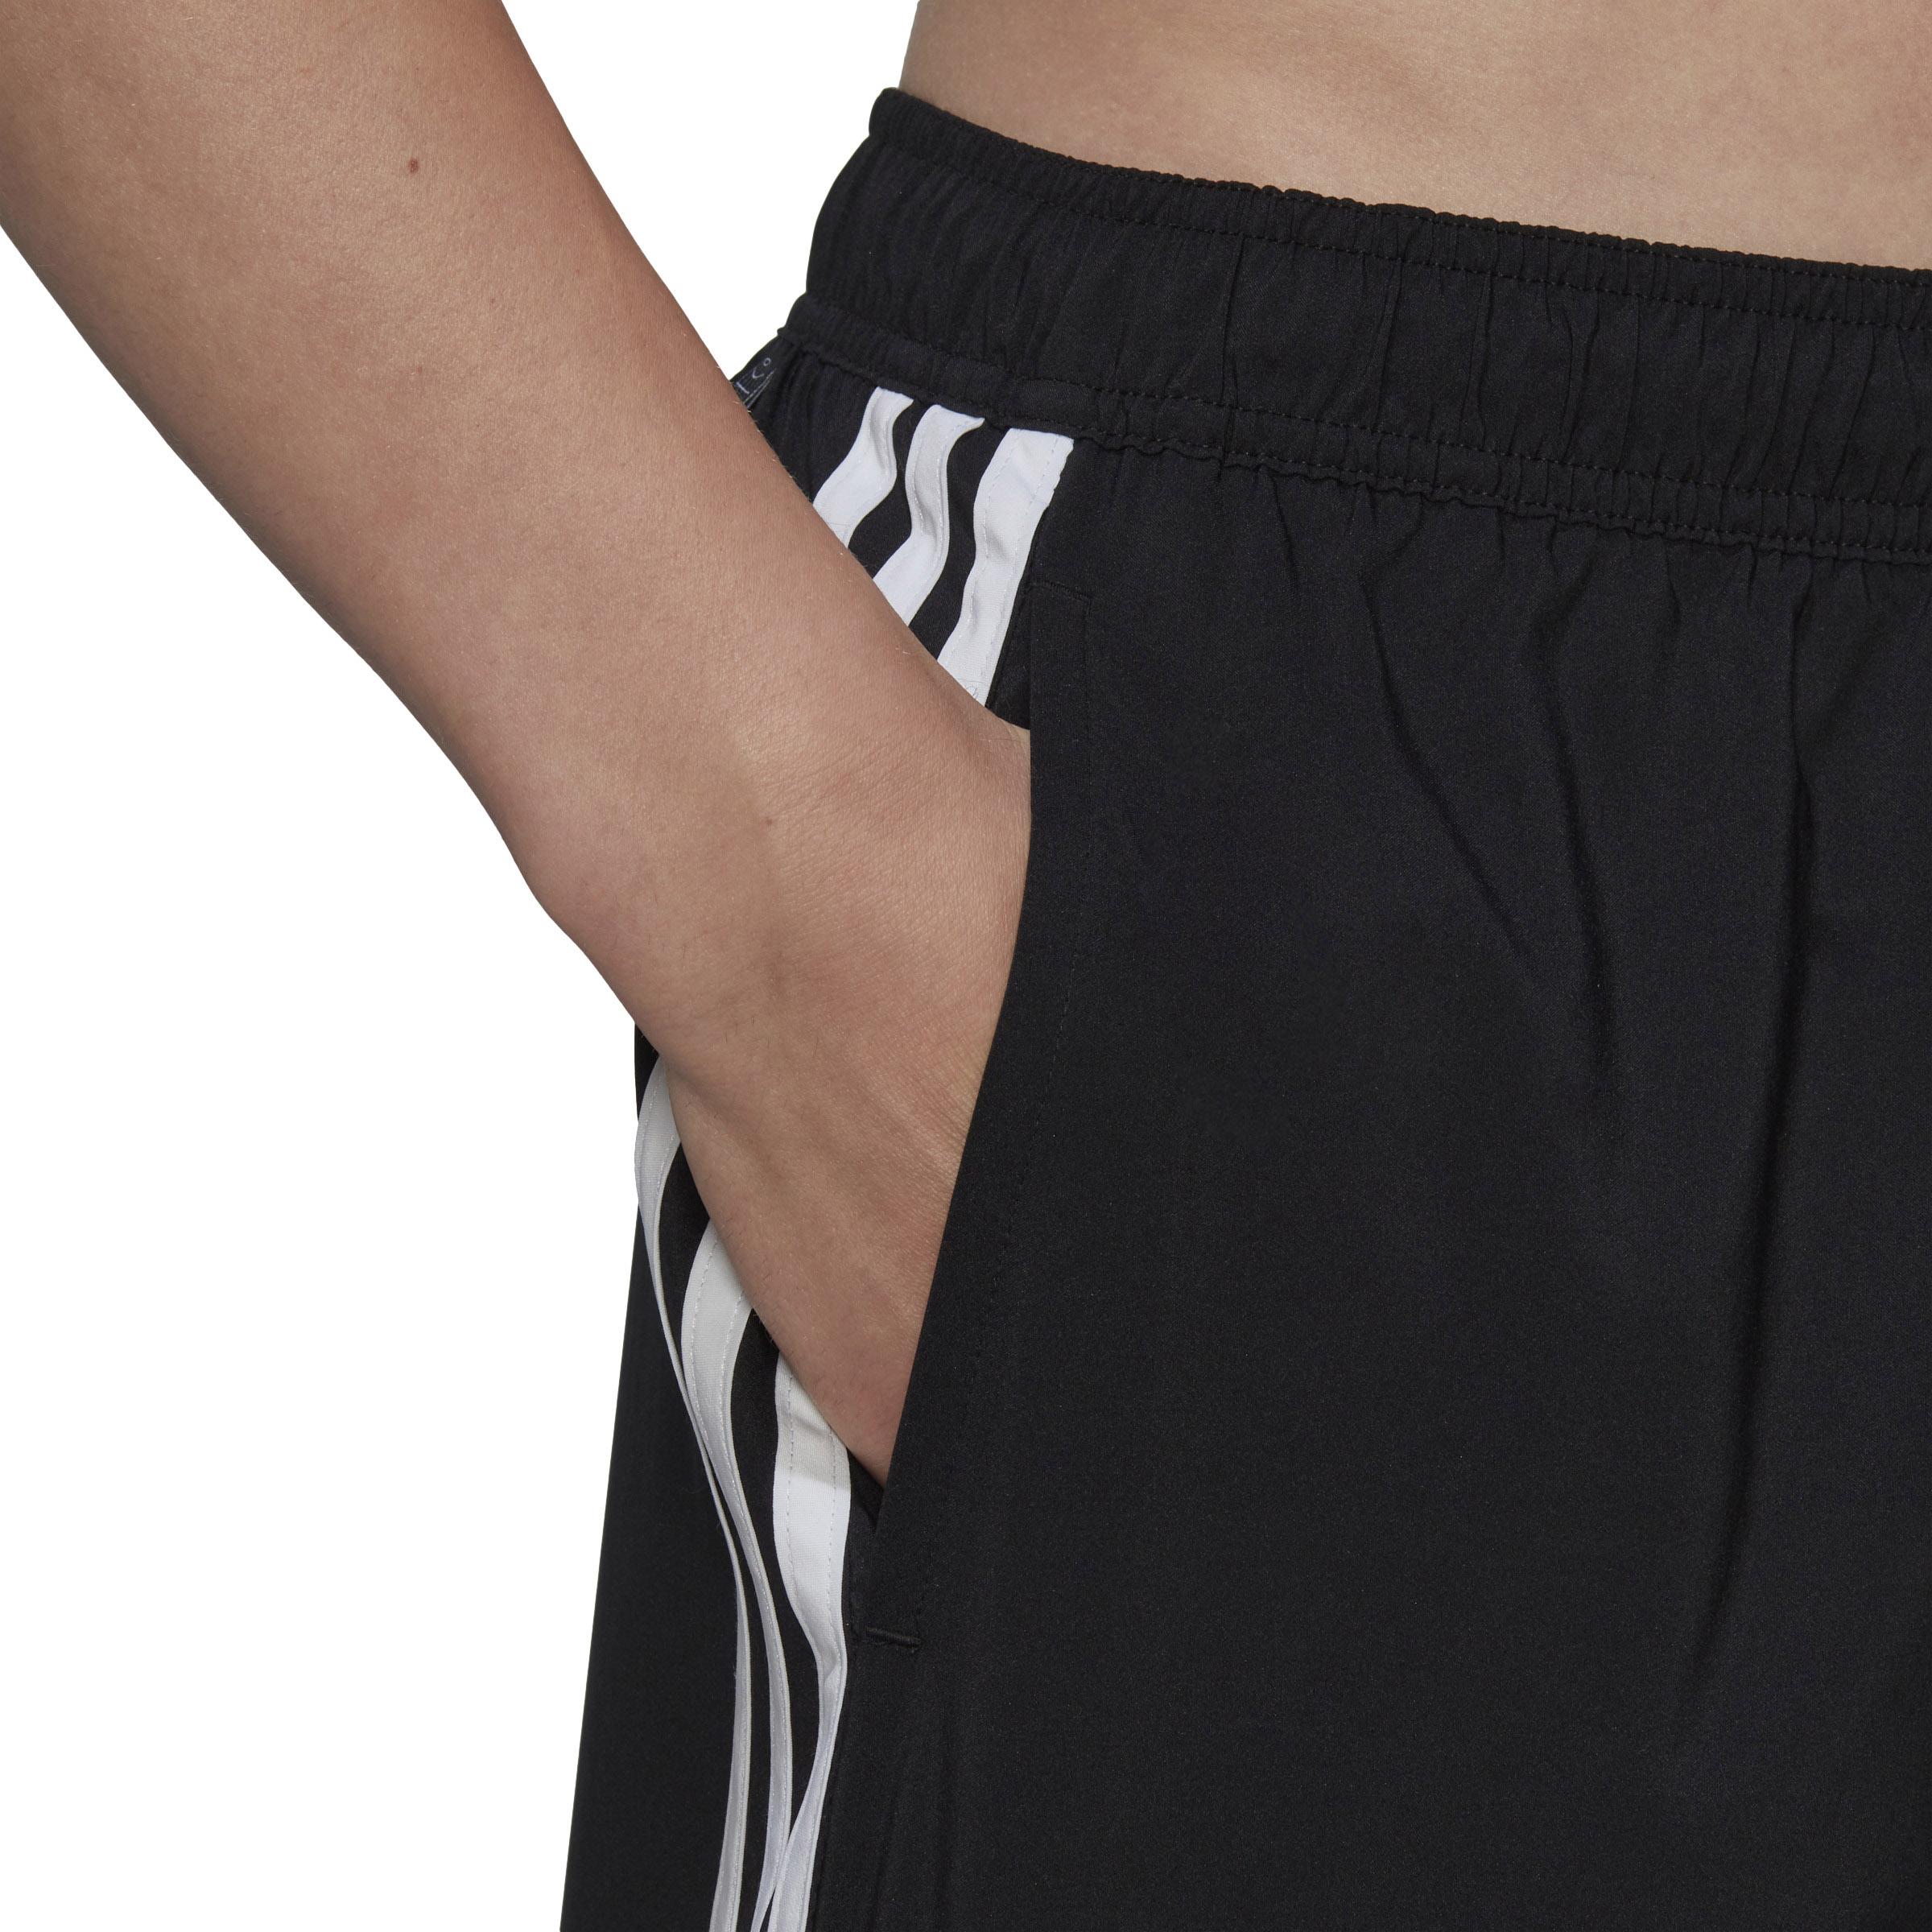 Shop Badehose von SH CLX Herren Online im black-white CL Adidas kaufen 3S SportScheck